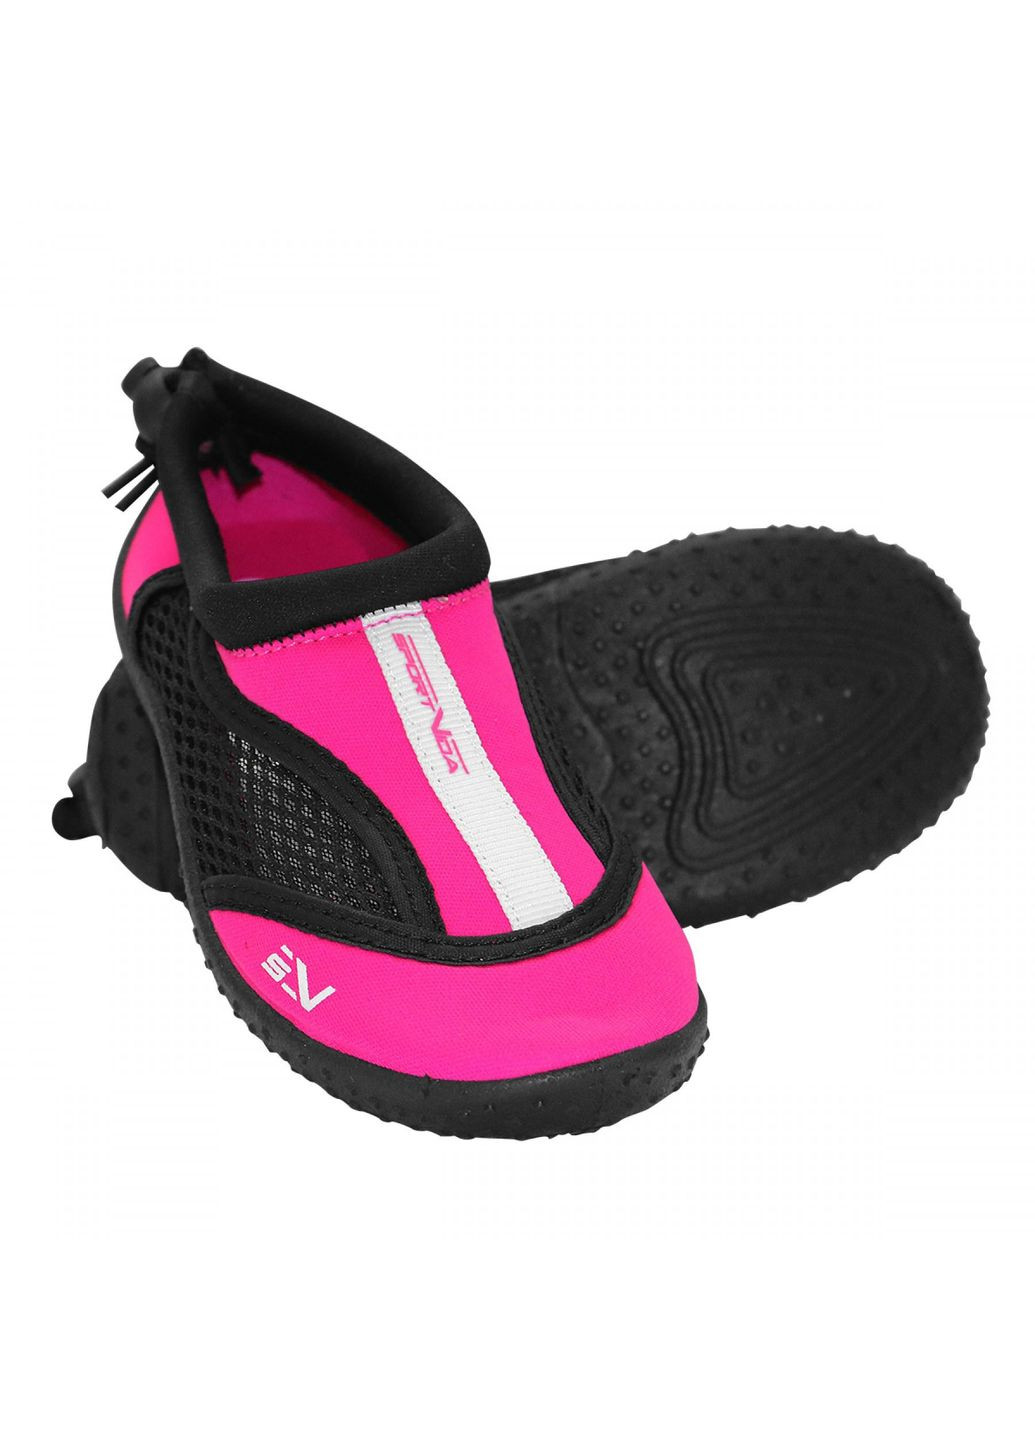 Обувь для пляжа и кораллов (аквашузы) SV-GY0001-R34 Size 34 Black/Pink SportVida (293484818)